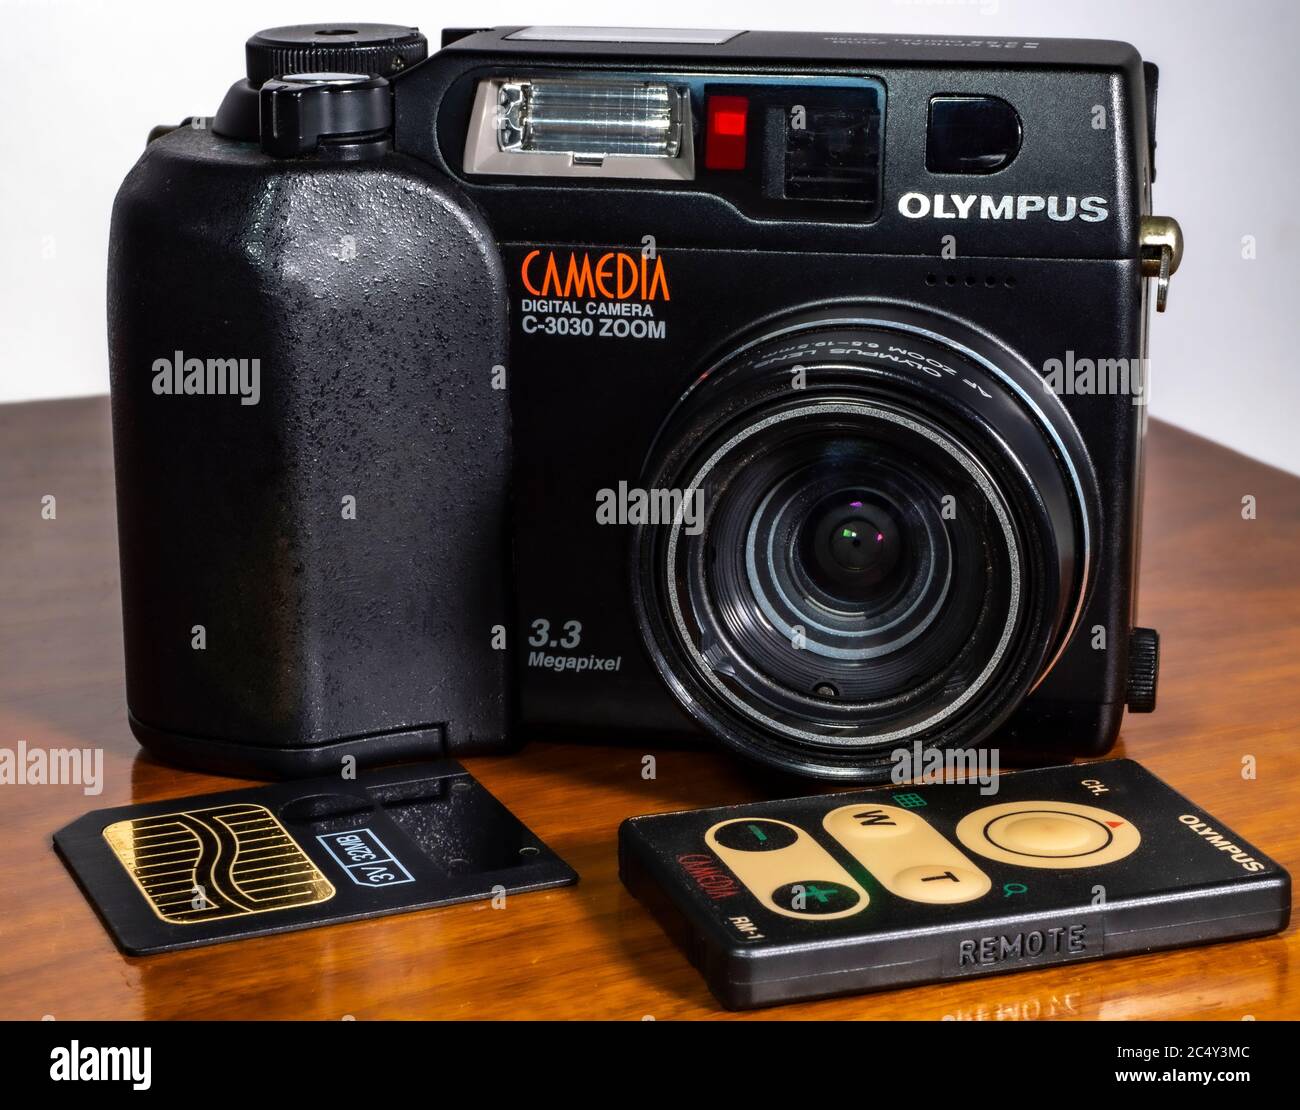 Olympus Camedia C3030 Zoom, 3.3 Megapixel Digitalkamera, hergestellt im Jahr 2000. Vorne ist eine 32 mb Smart Media Speicherkarte und eine IR-Fernbedienung. Stockfoto